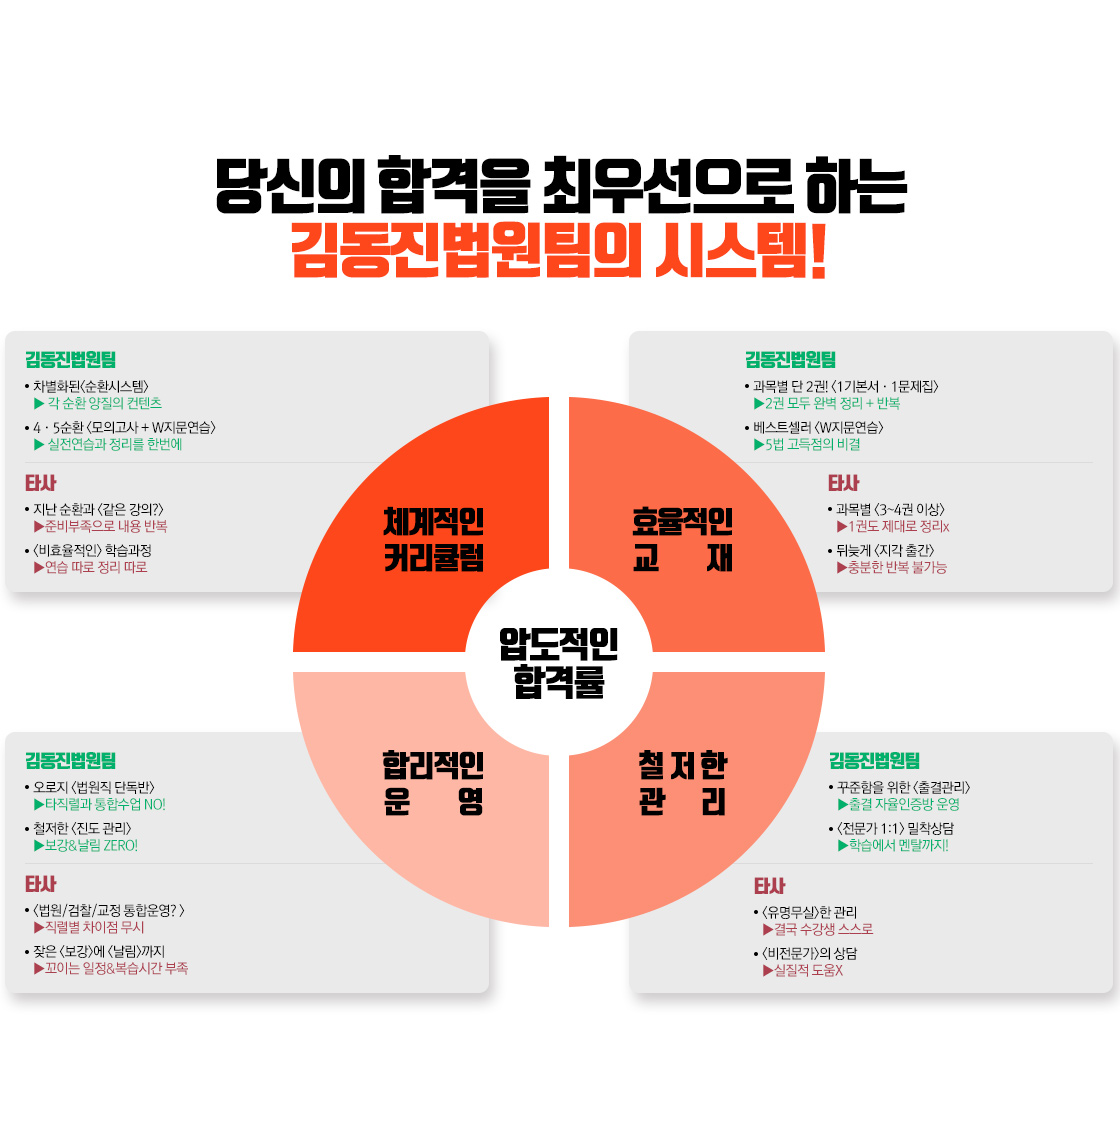 김동진 법원팀의 시스템